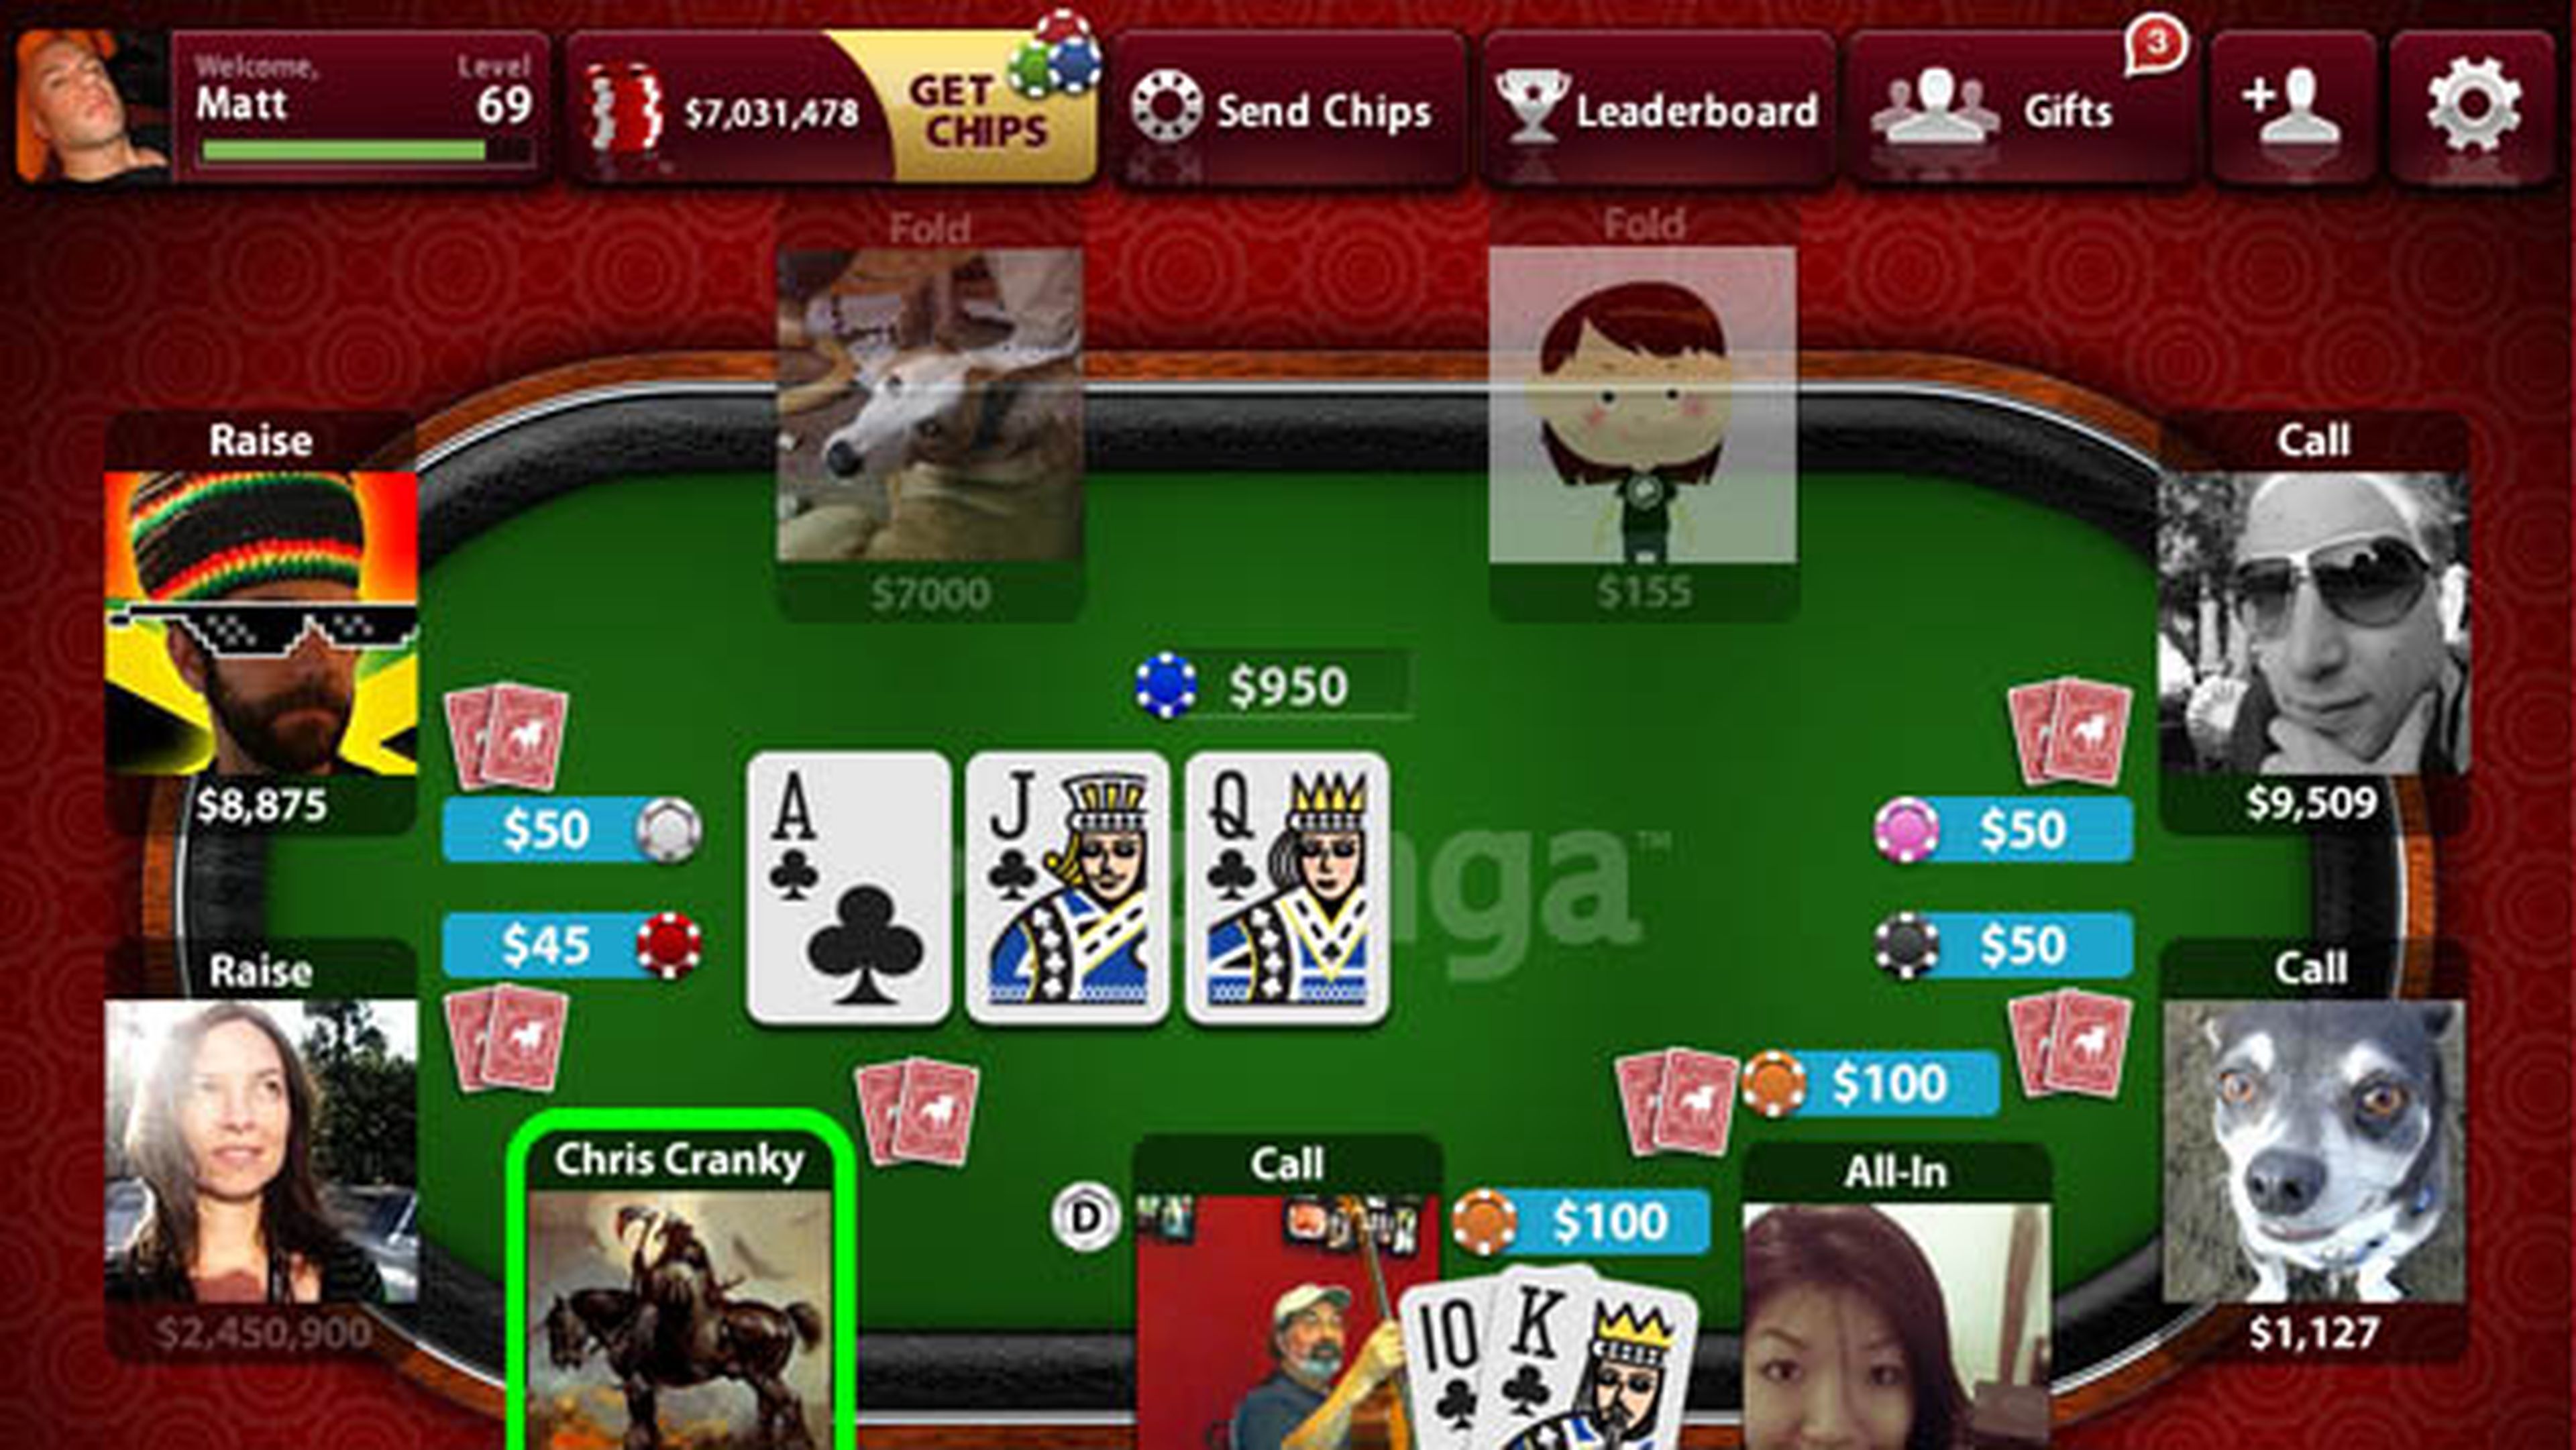 Zynga Poker domina el App Store